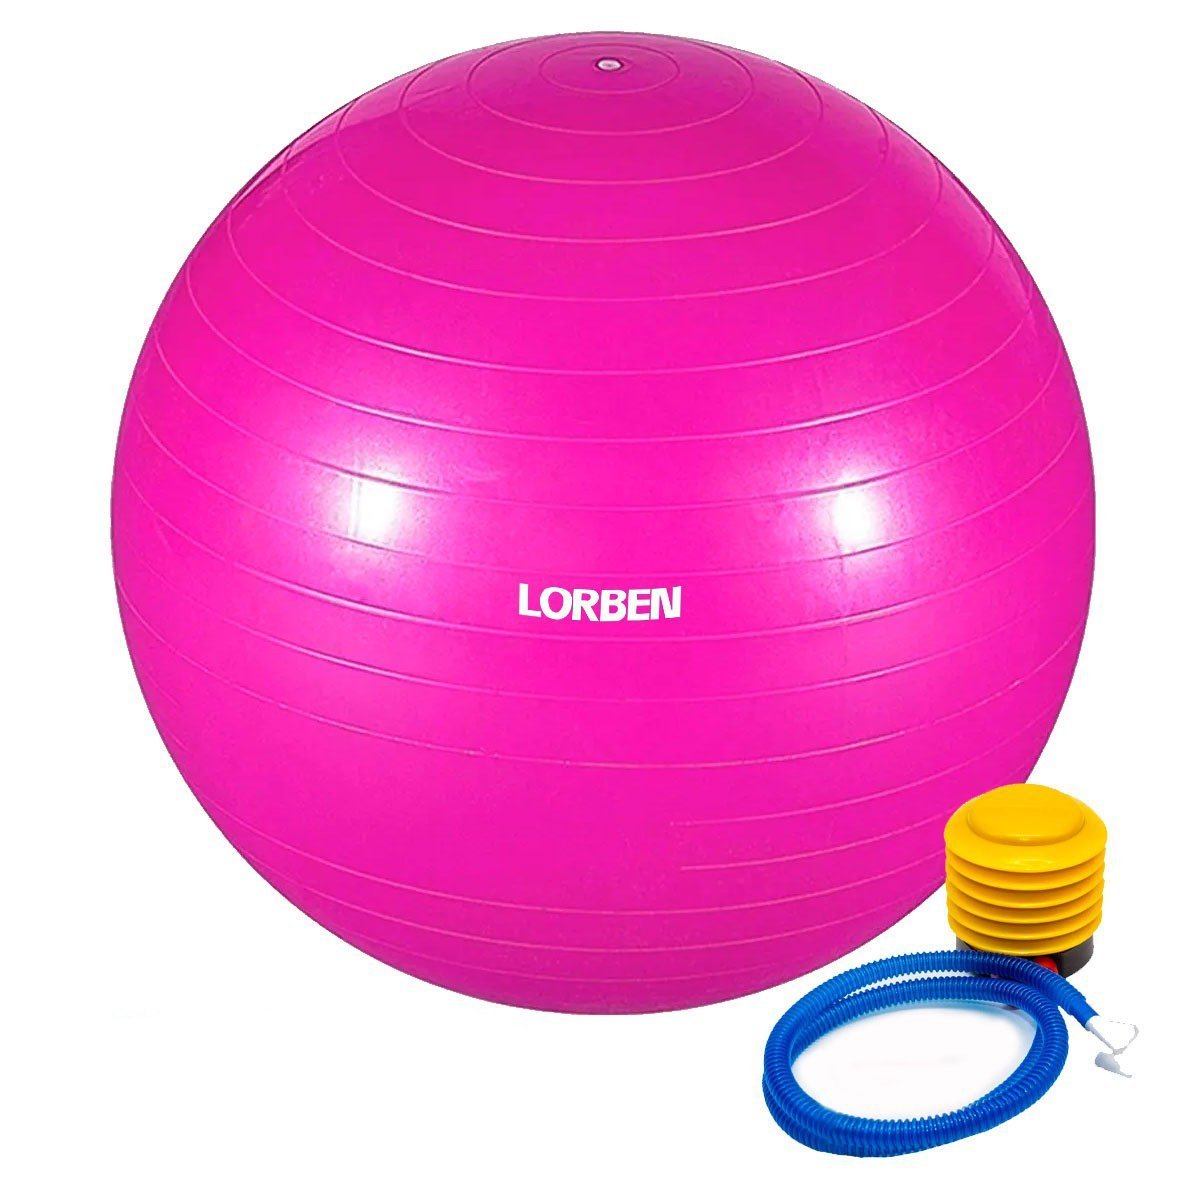 Bola de Pilates Yoga Funcional Lorben com Bomba Suporta até 150 Kg Rosa - 1